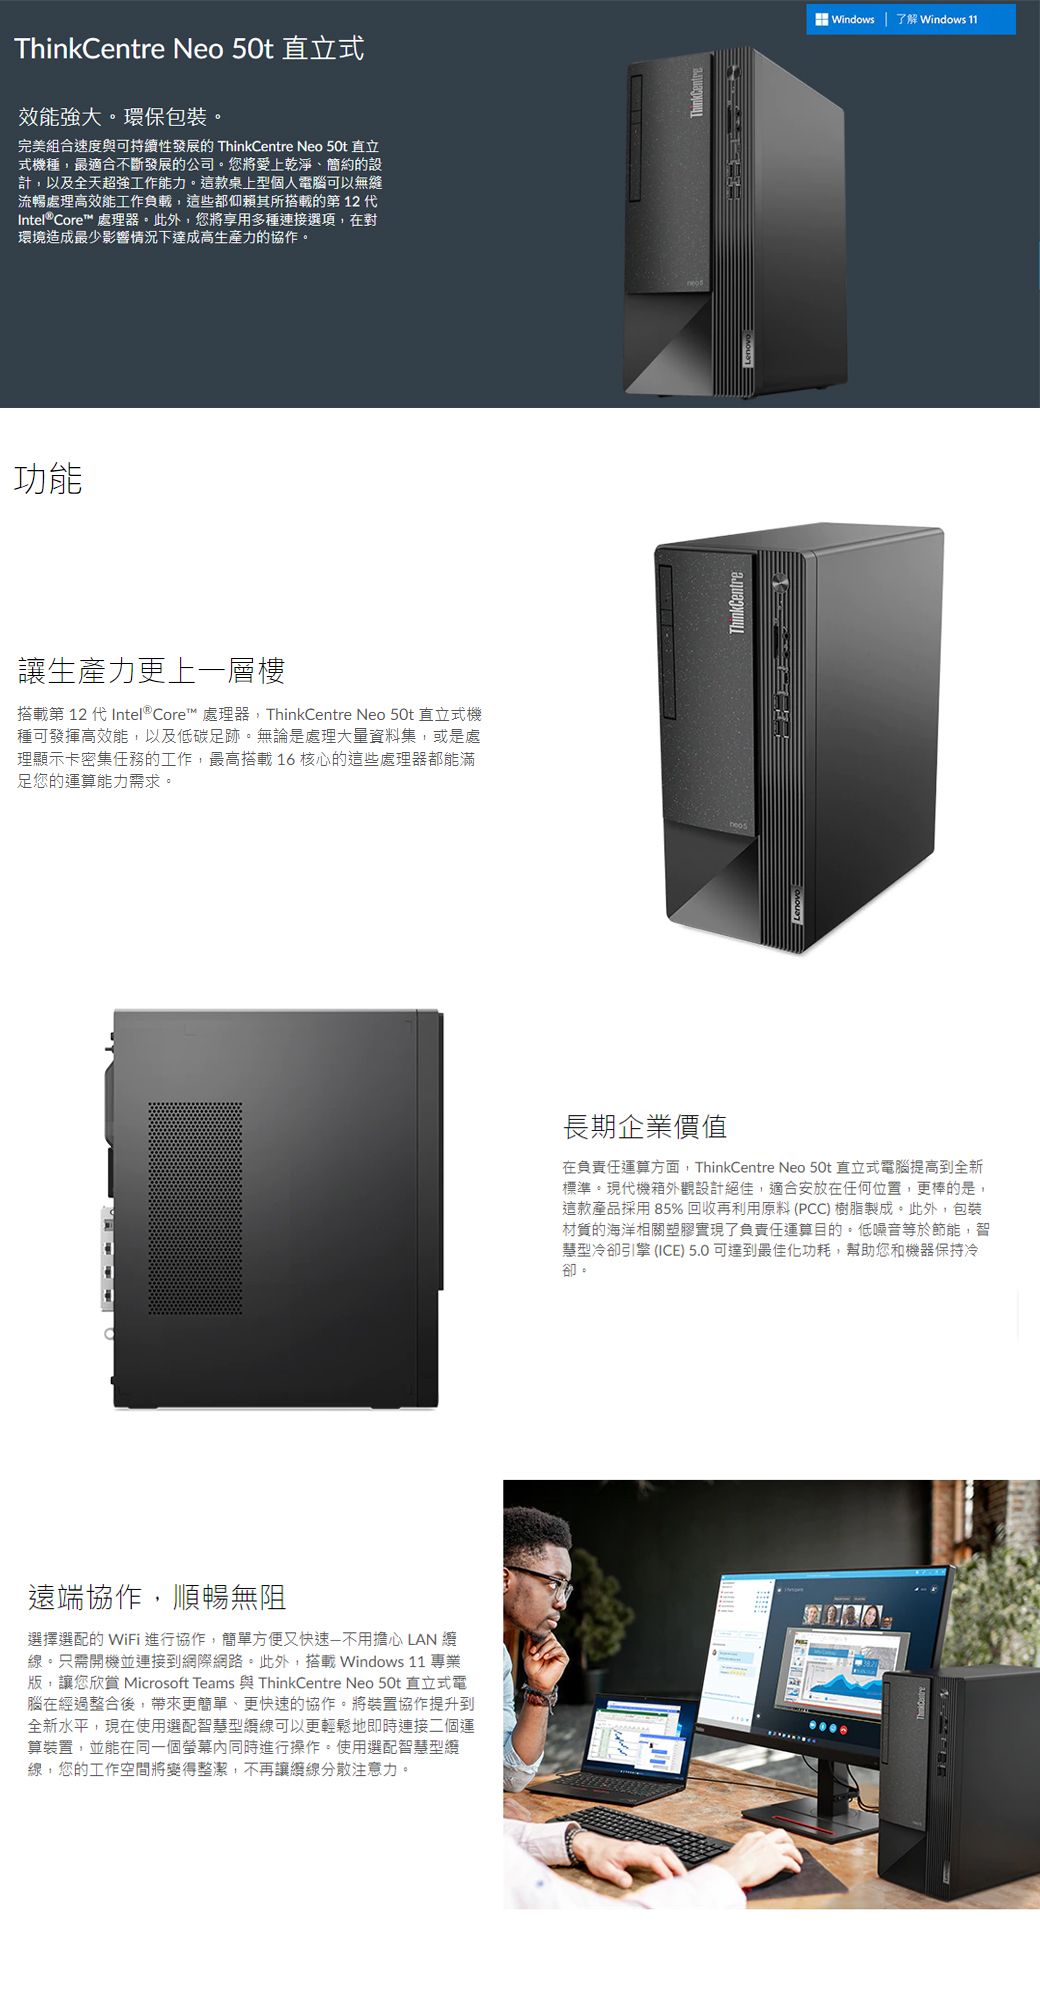 8G記憶體) + (商用)Lenovo Neo 50t(i5-12400/8G/1T+256/W11P) - PChome